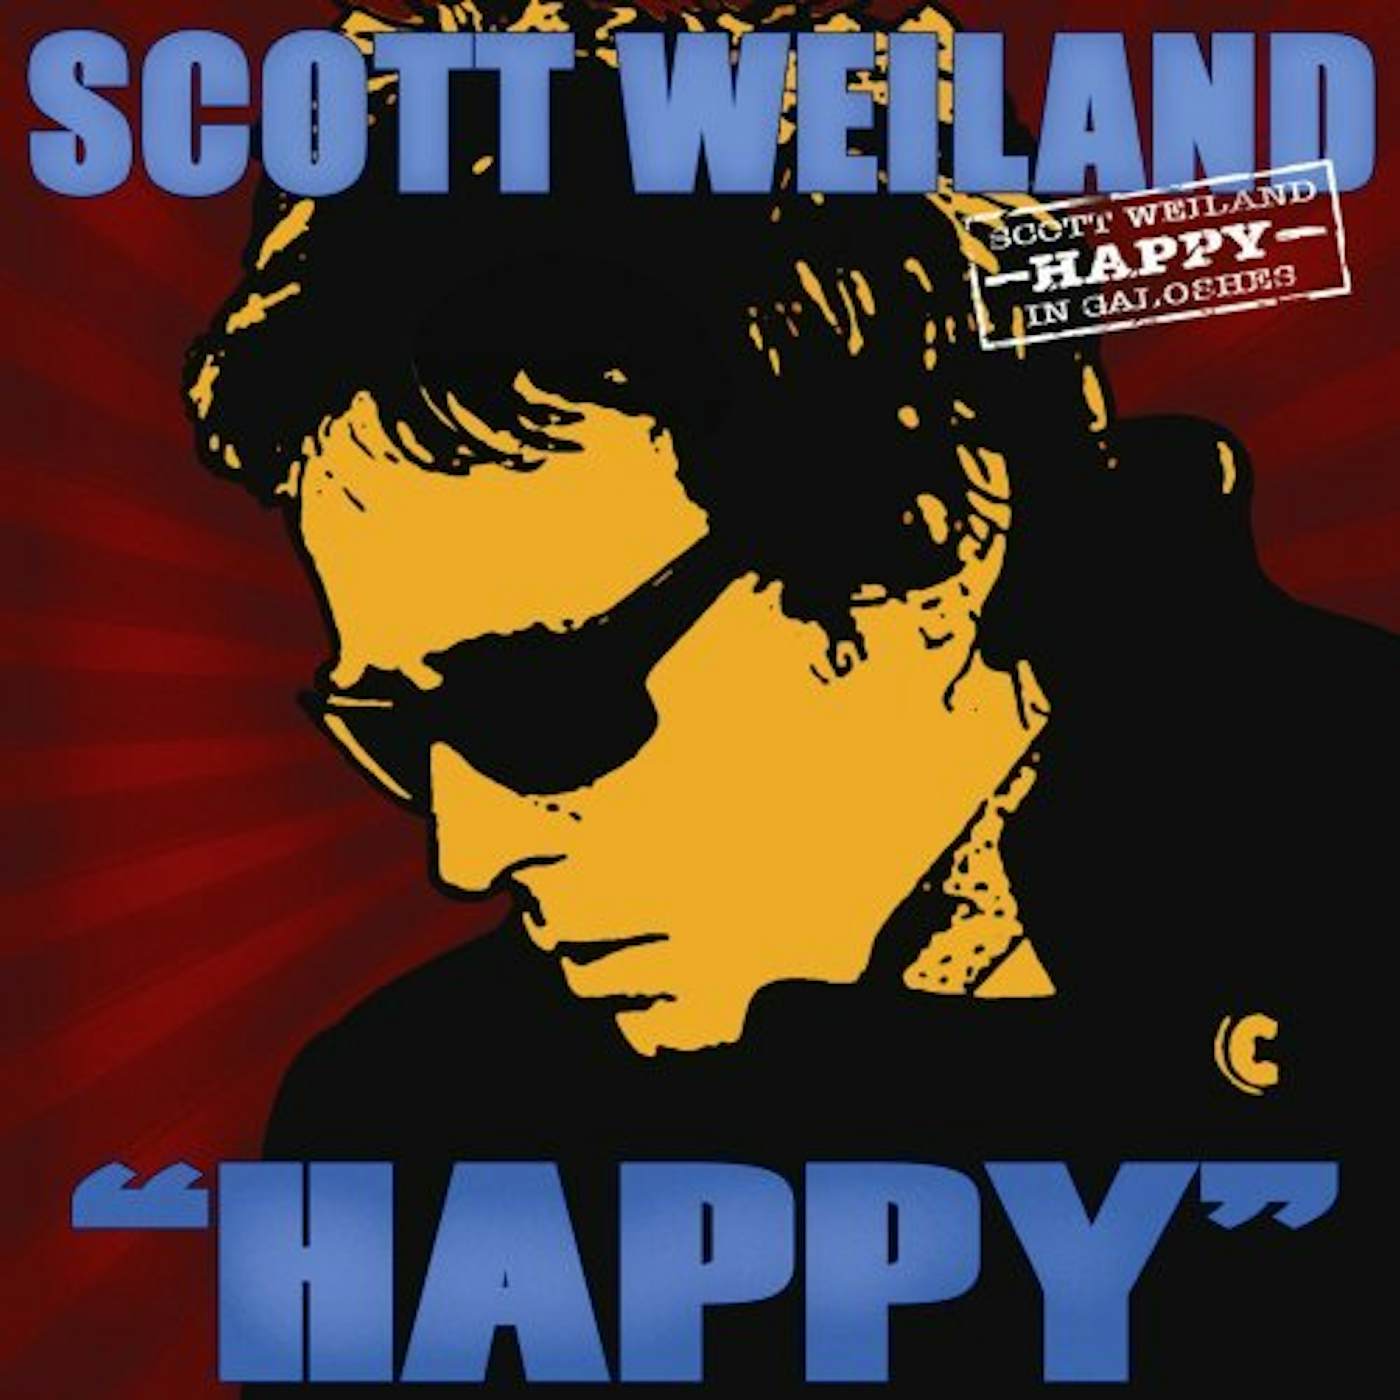 Scott Weiland HAPPY IN GALOSHES CD